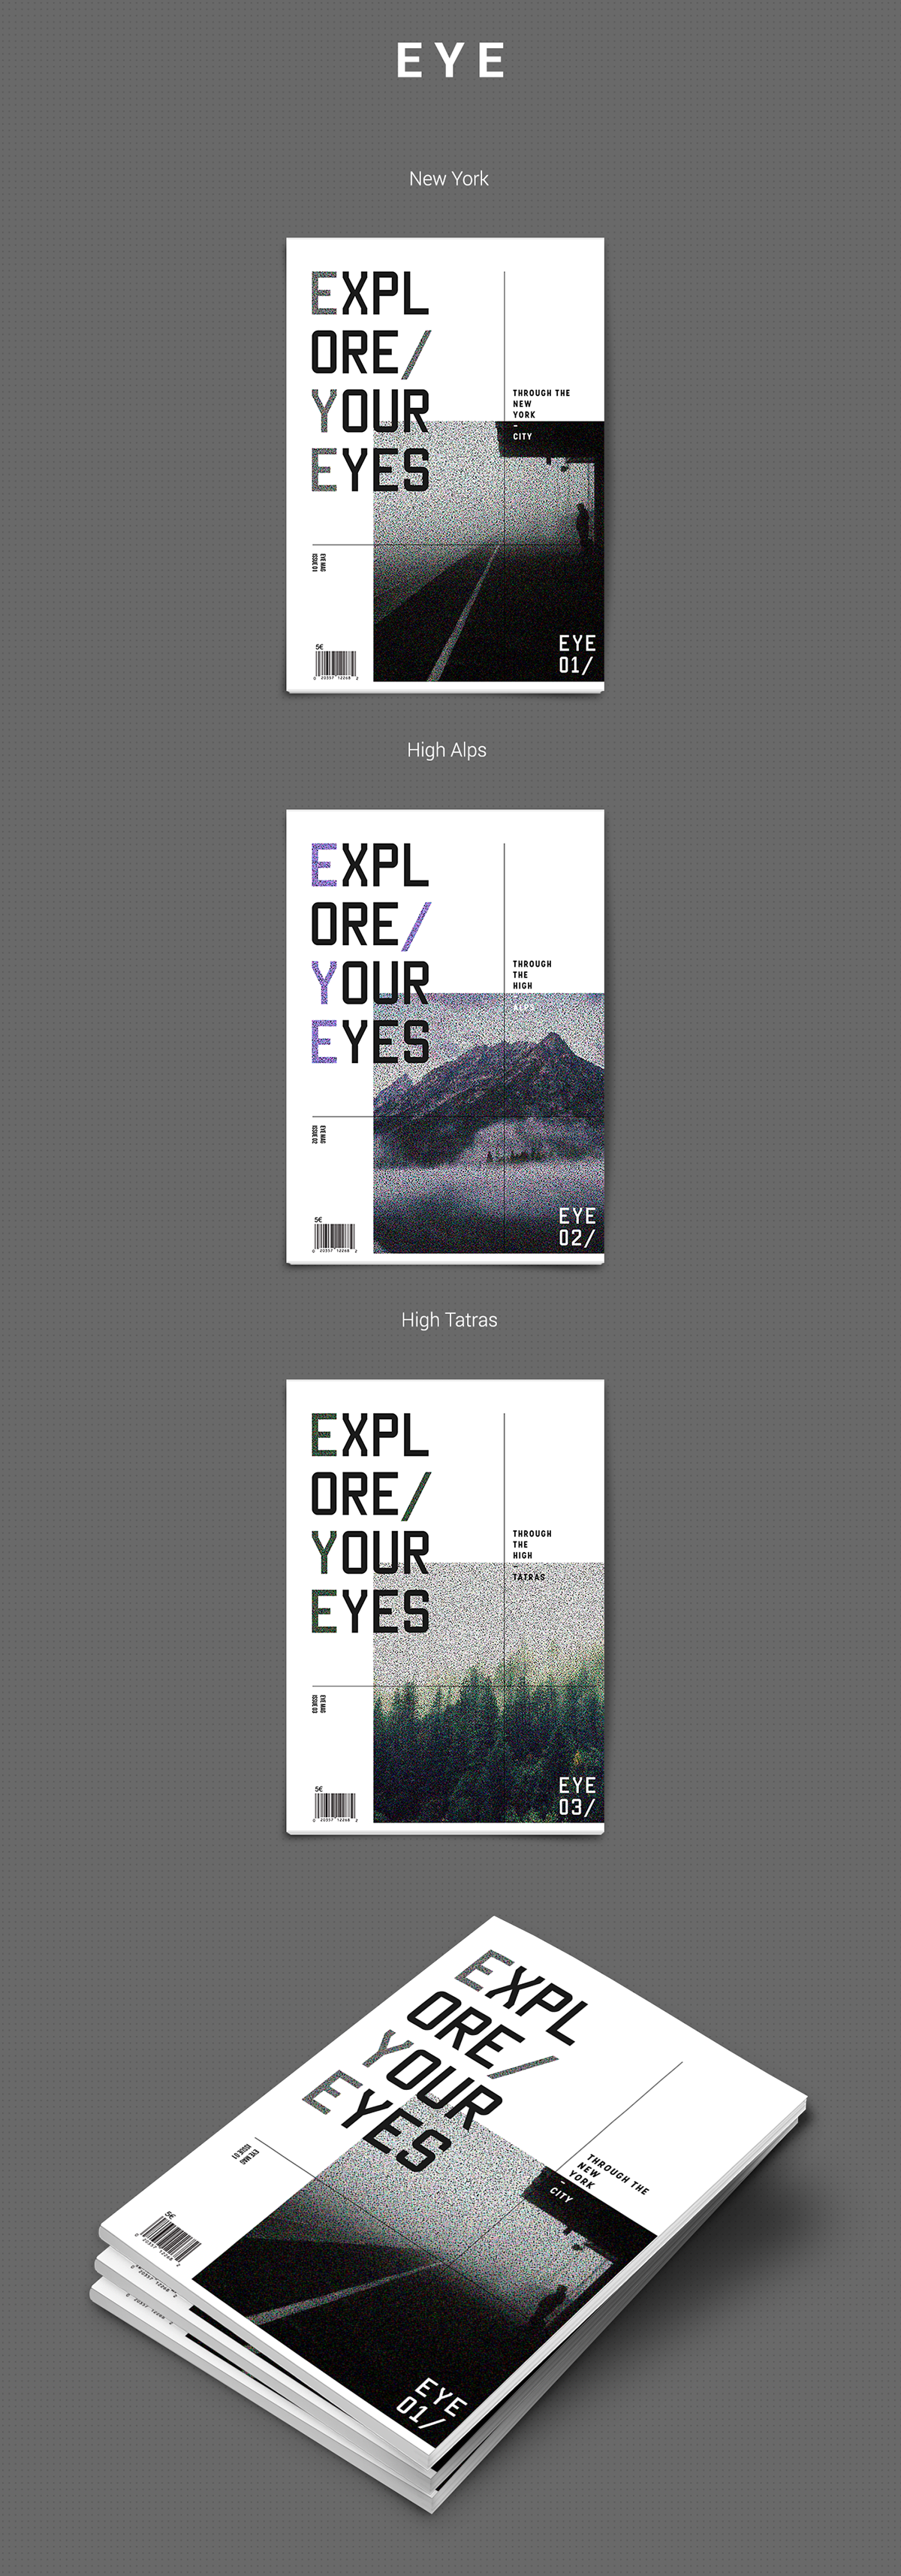 eye exploreyoureyes explore your eyes Photography  magazine